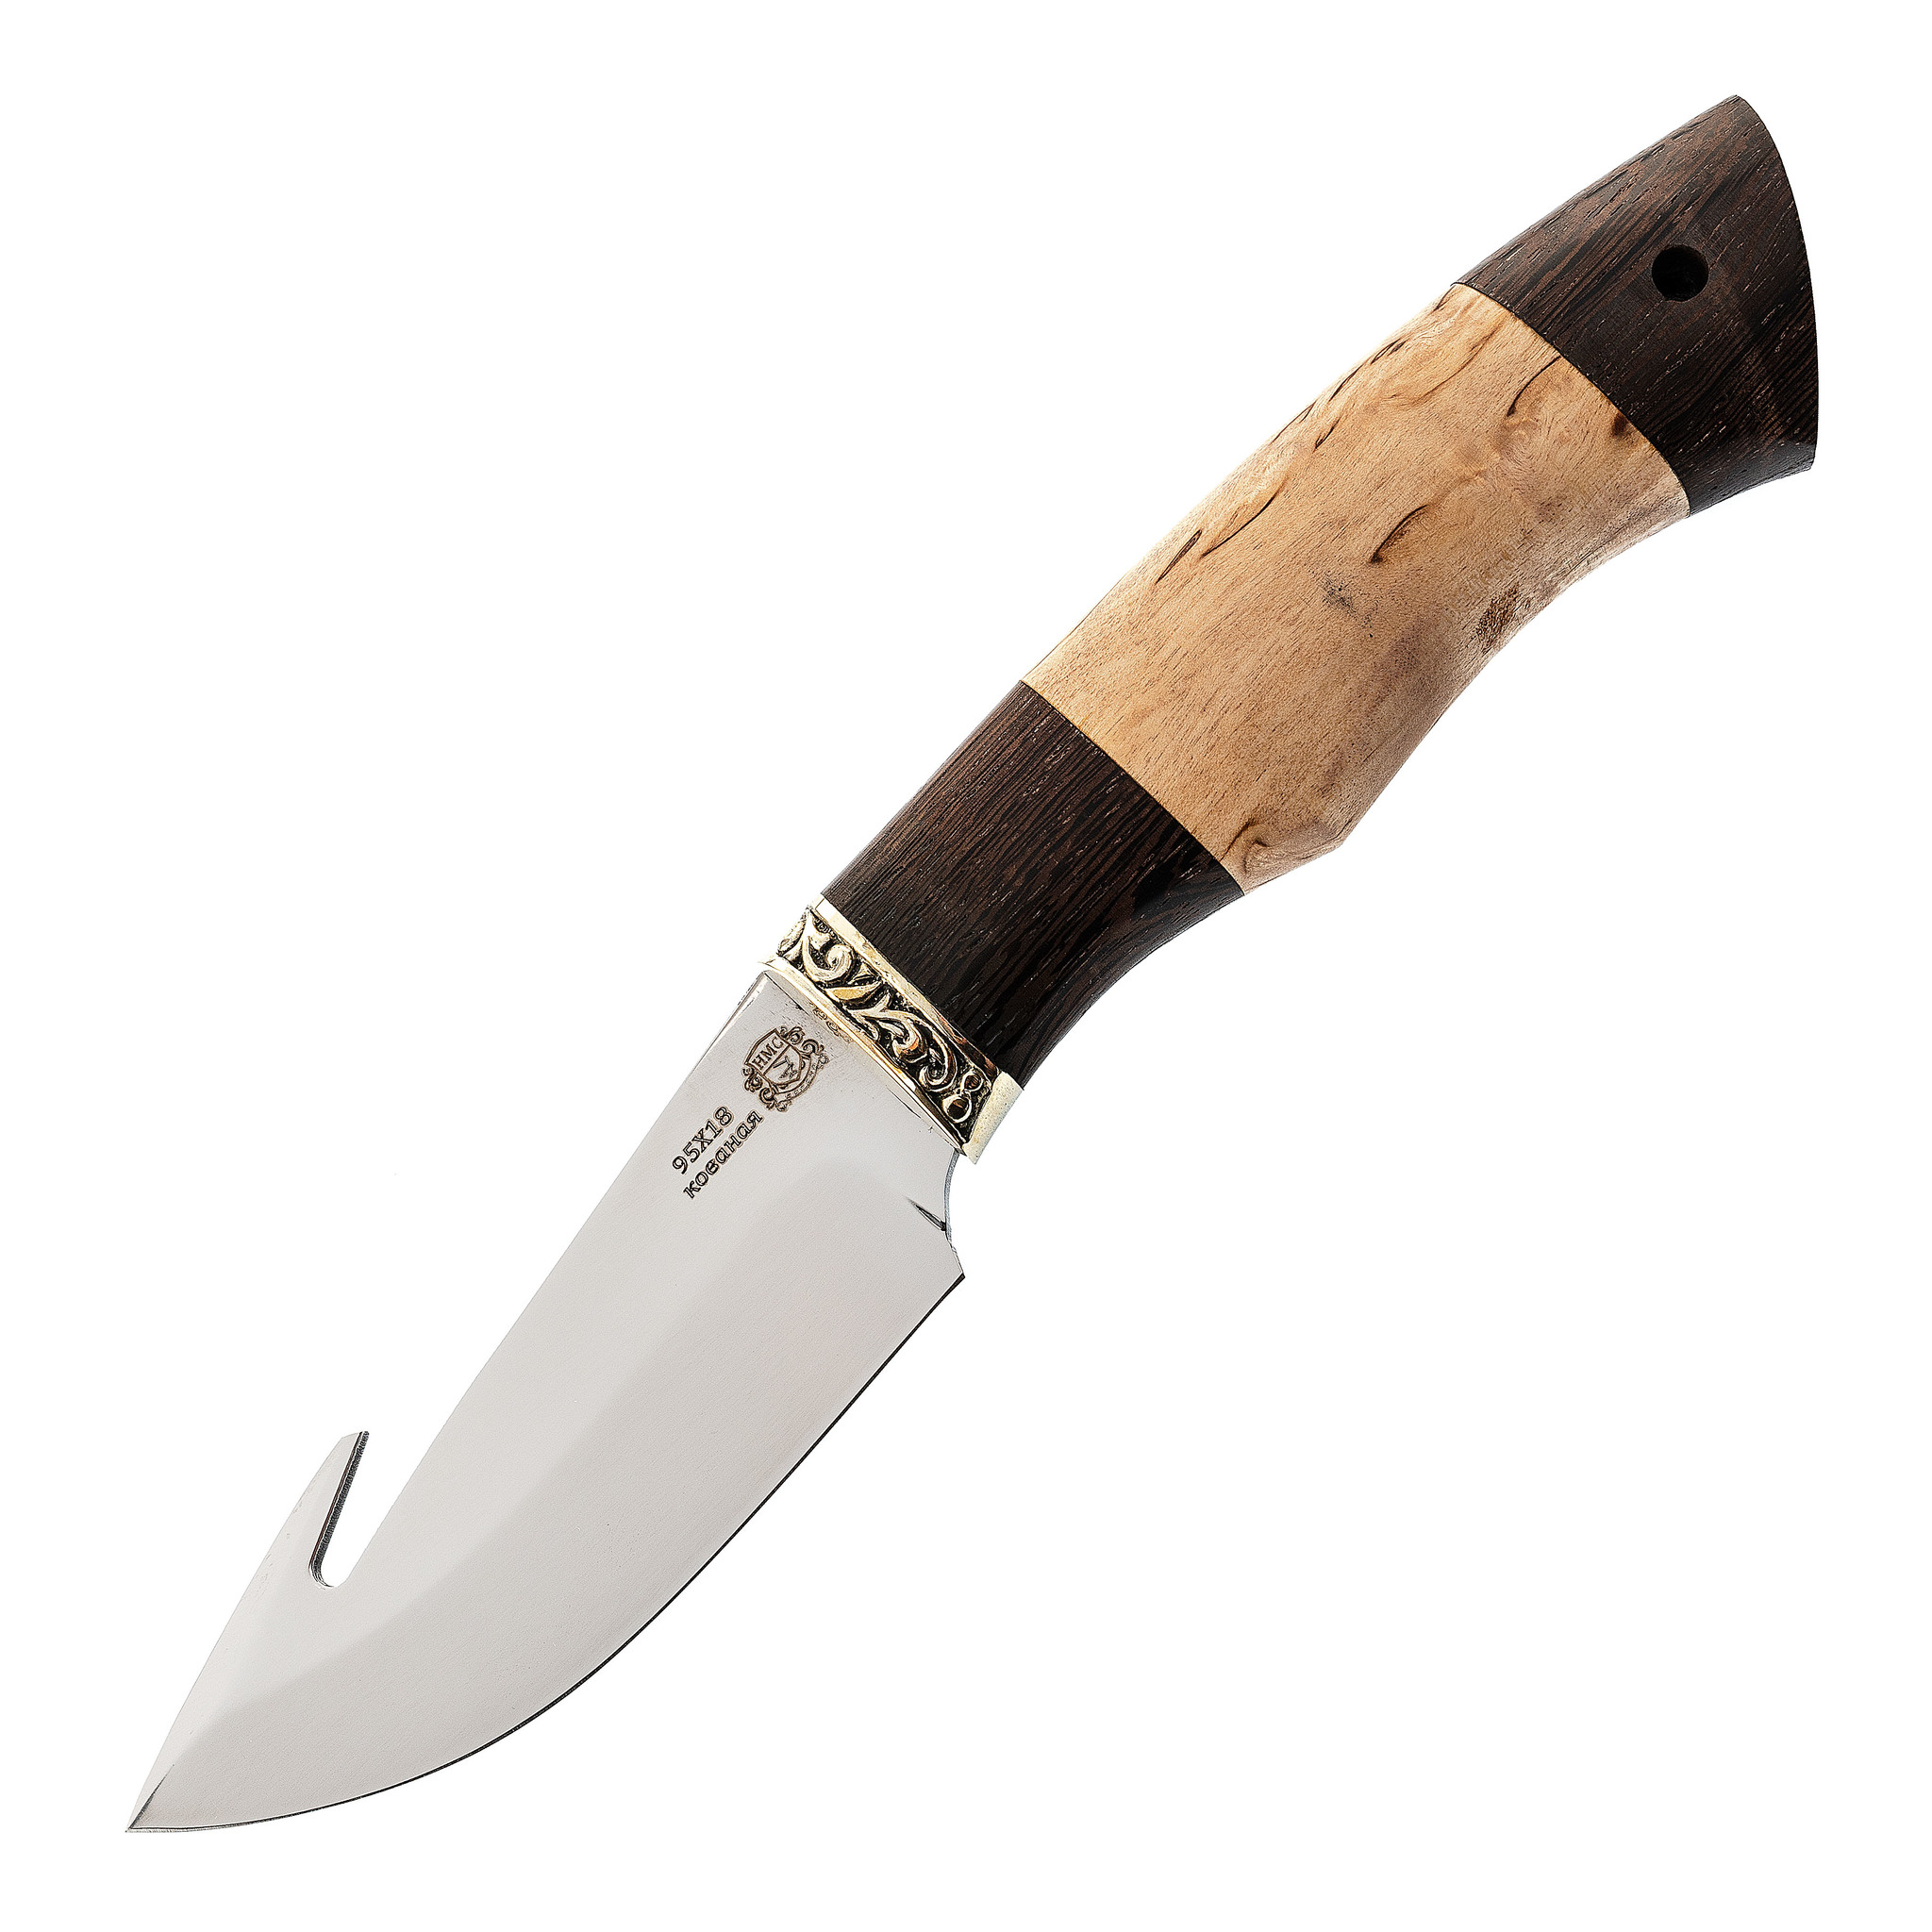 Нож Шкуросъемный с крюком, сталь 95Х18, рукоять карельская береза/венге - фото 1